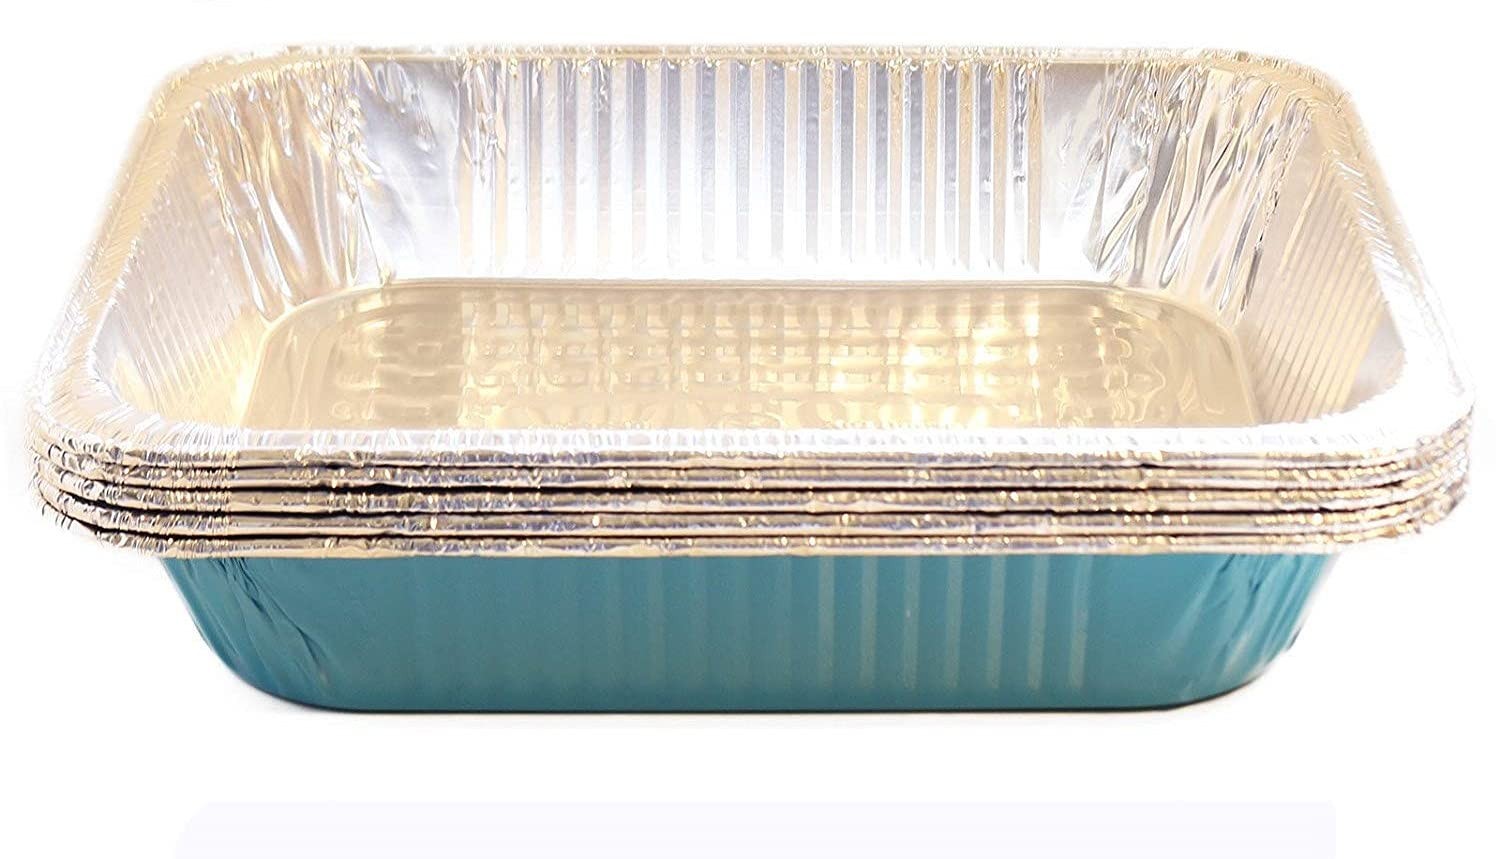 TigerChef Caribbean Blue Disposable Half Size Aluminum Foil Steam Table Pans, 9" x 13" - 5 pcs